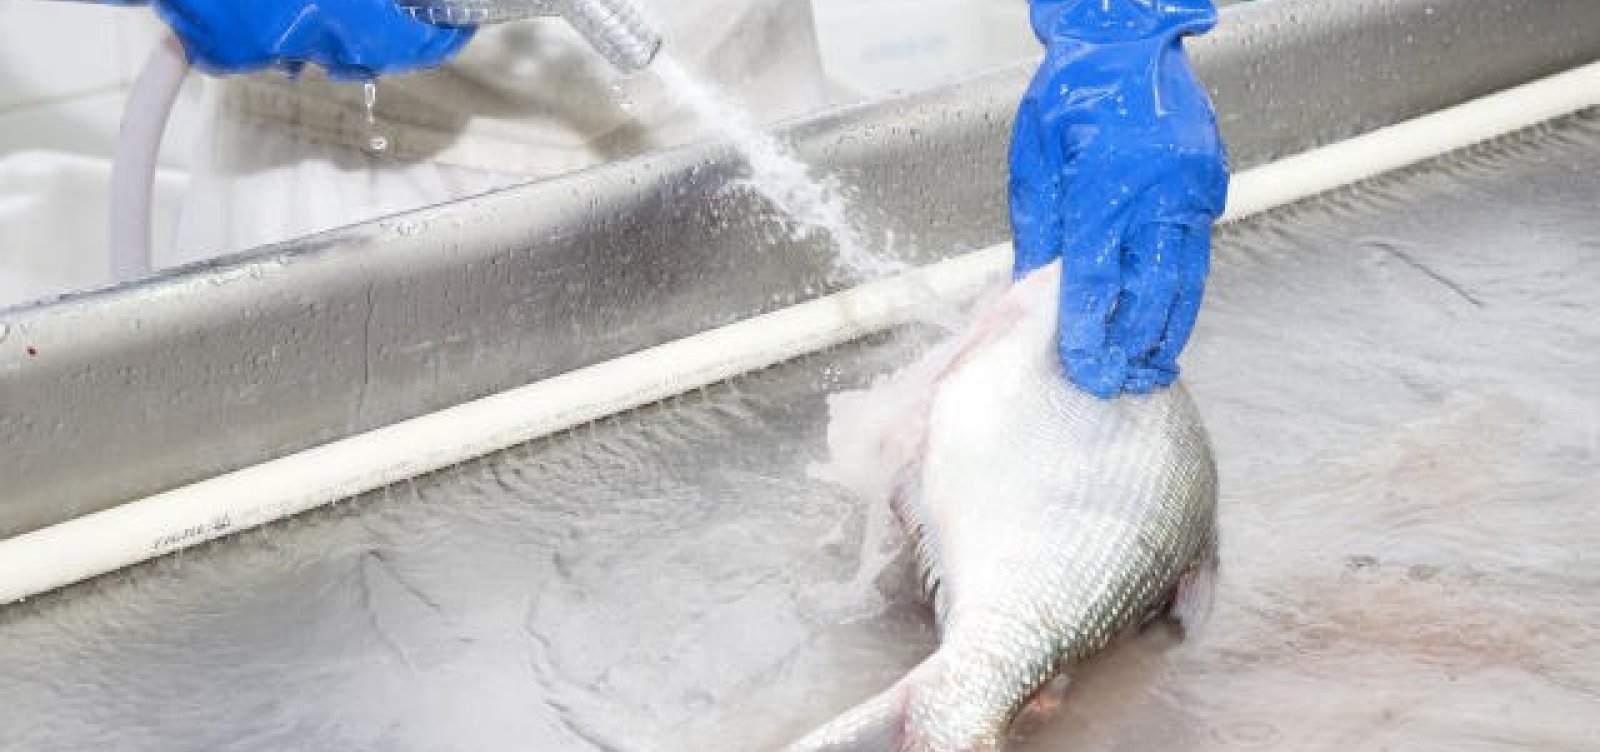 Exames mostram que pescados de áreas atingidas por óleo não apresentam riscos para o consumo humano